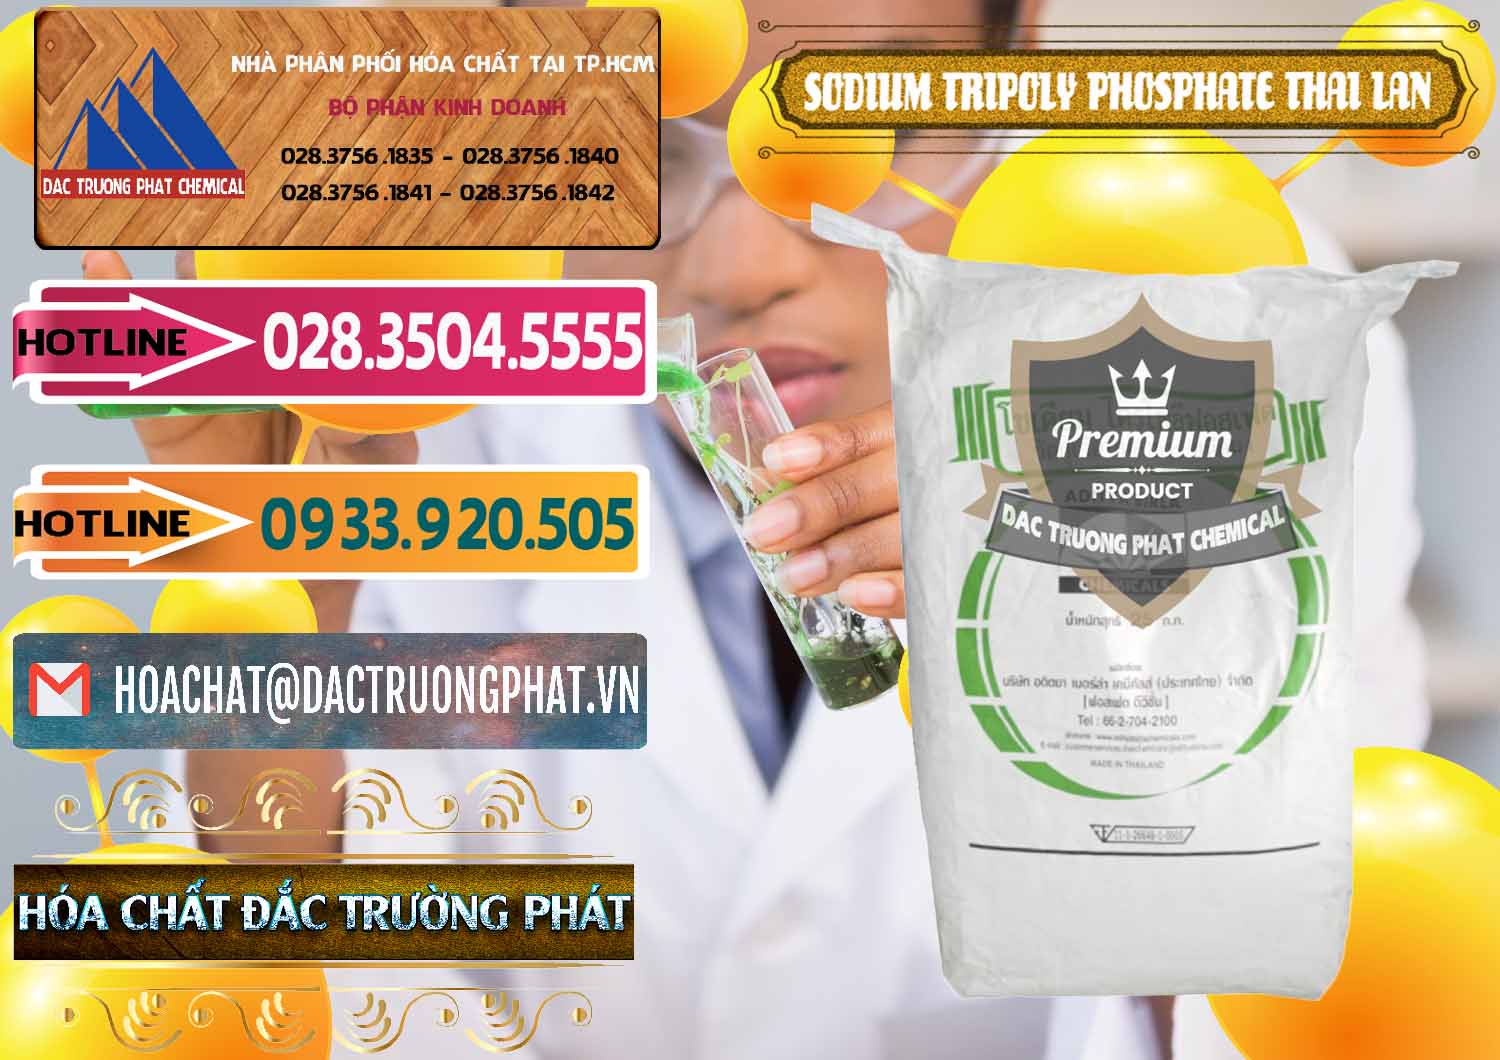 Cty chuyên cung ứng & bán Sodium Tripoly Phosphate - STPP Aditya Birla Grasim Thái Lan Thailand - 0421 - Đơn vị cung cấp & kinh doanh hóa chất tại TP.HCM - dactruongphat.vn